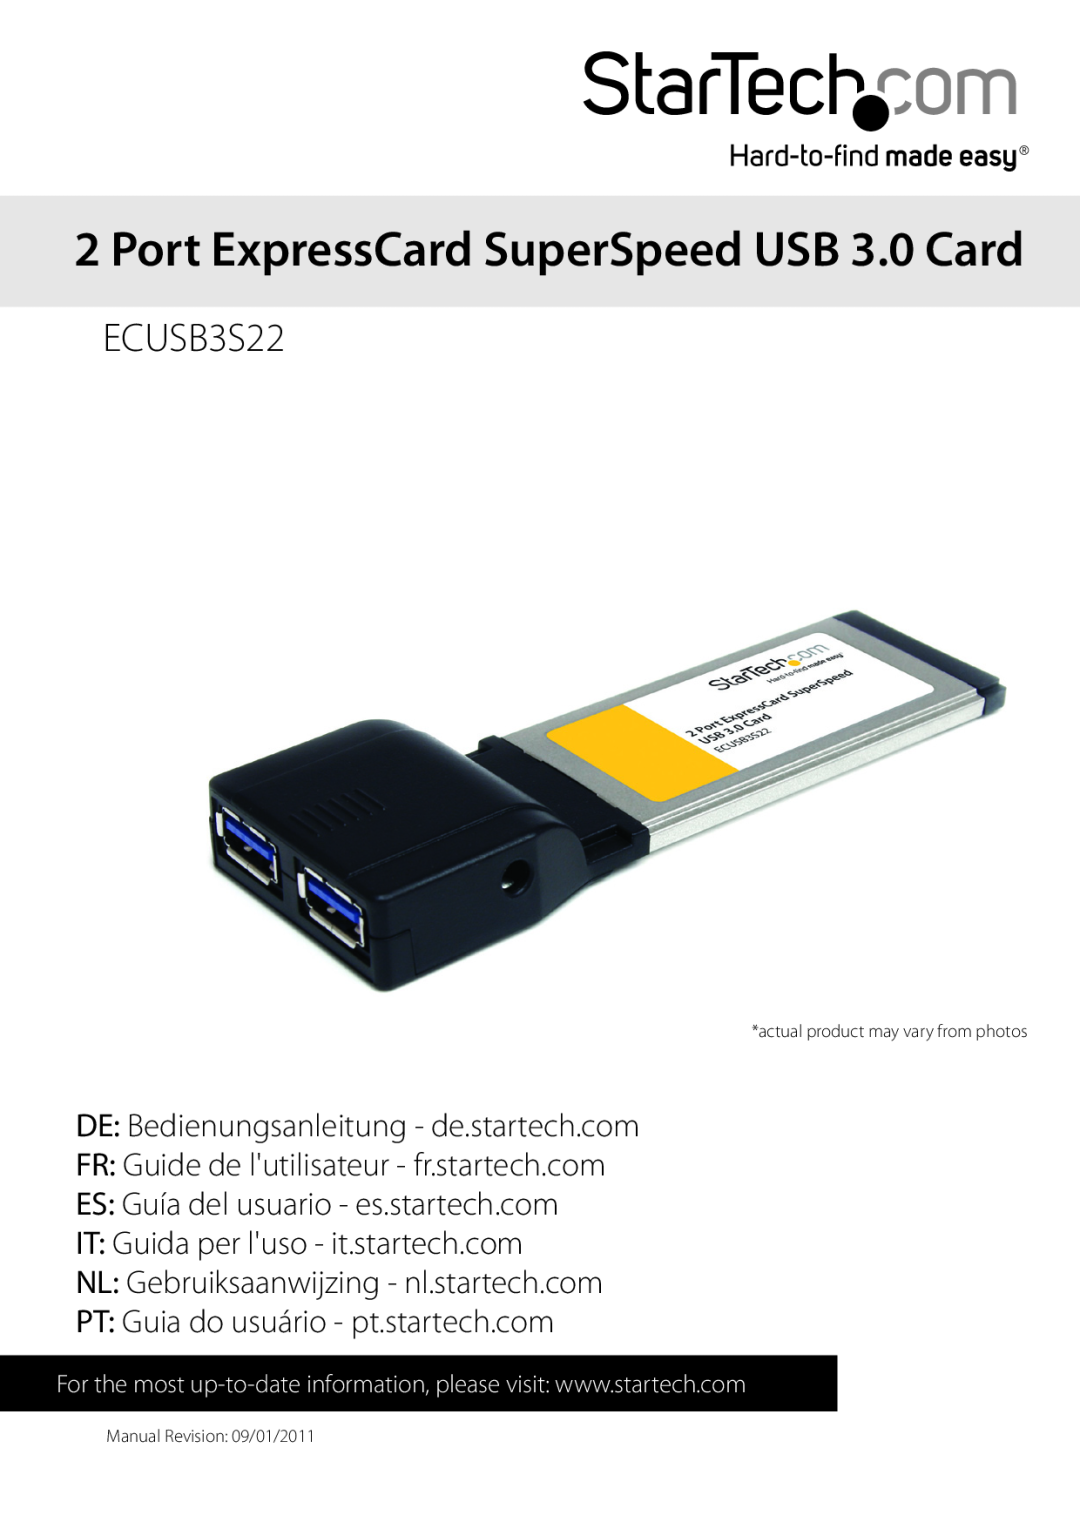 StarTech.com ecusb3s22 manual Port ExpressCard SuperSpeed USB 3.0 Card, ECUSB3S22, ES Guía del usuario - es.startech.com 